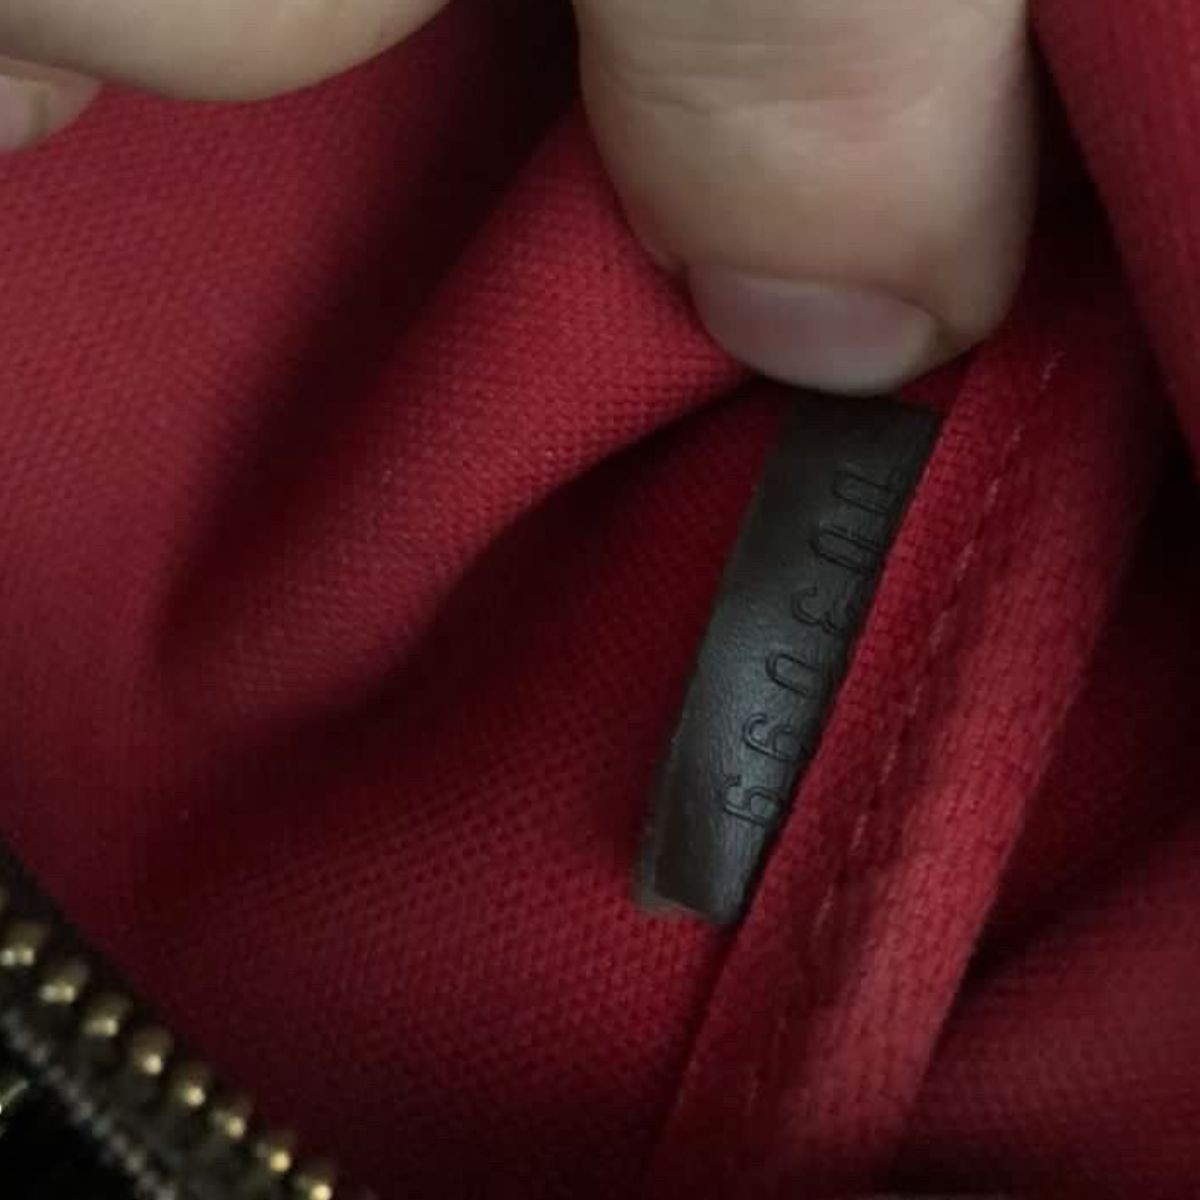 ewa lagan - Louis Vuitton Tasche Aktentasche Damier Graphite grau anthrazit